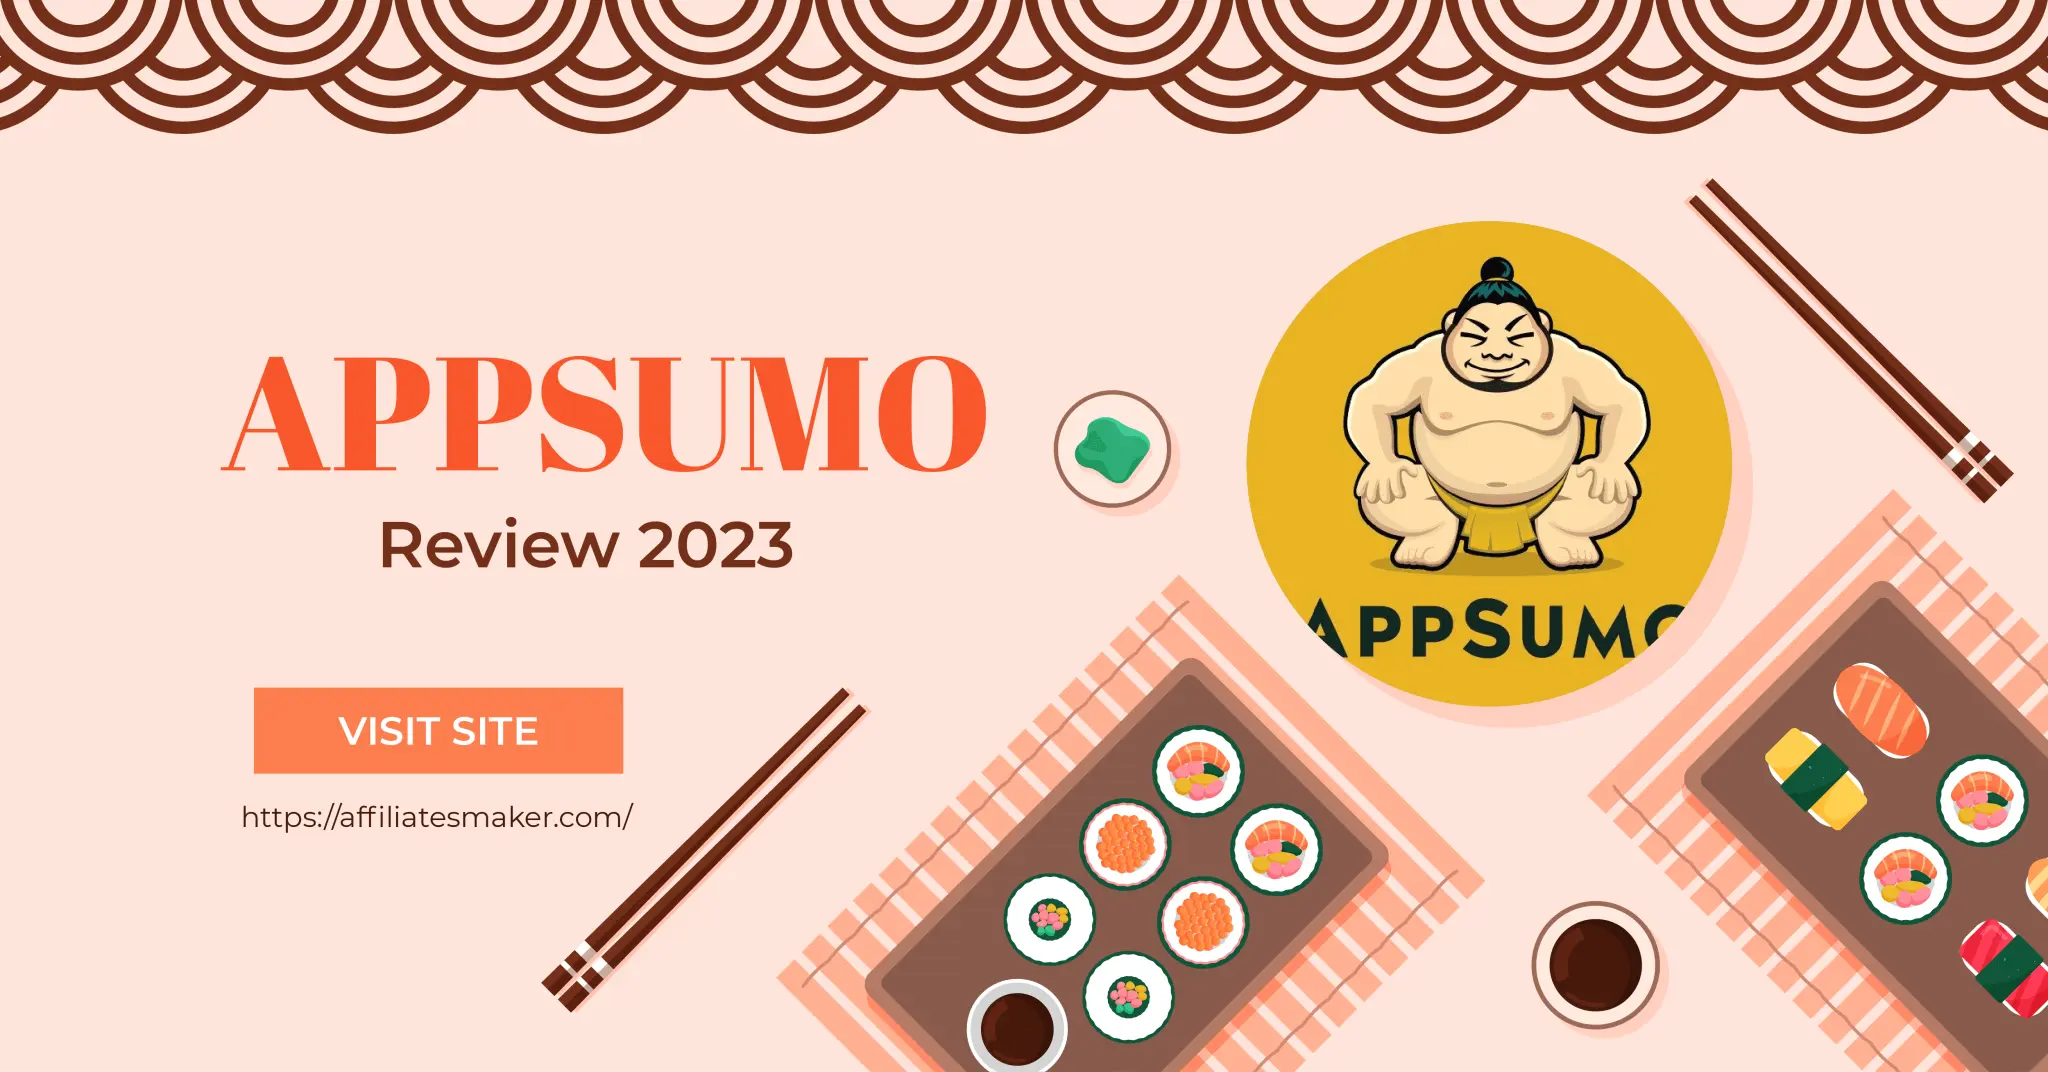 Appsumo, Appsumo banner, Appsumo review 2023